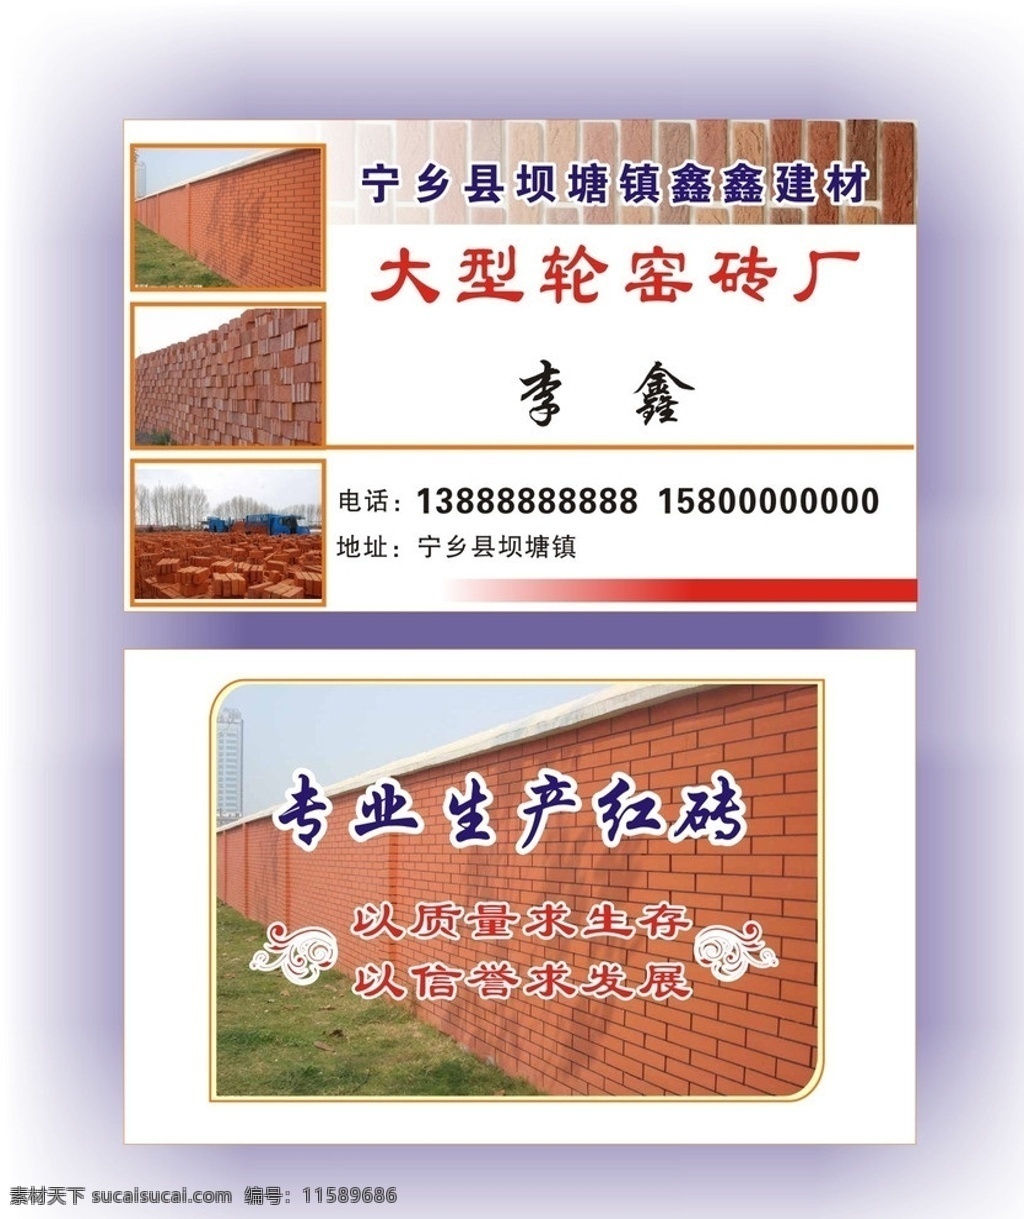 红砖厂名片 红砖 大型轮窑砖厂 红砖图片 专业生产红砖 建材 名片卡片 矢量